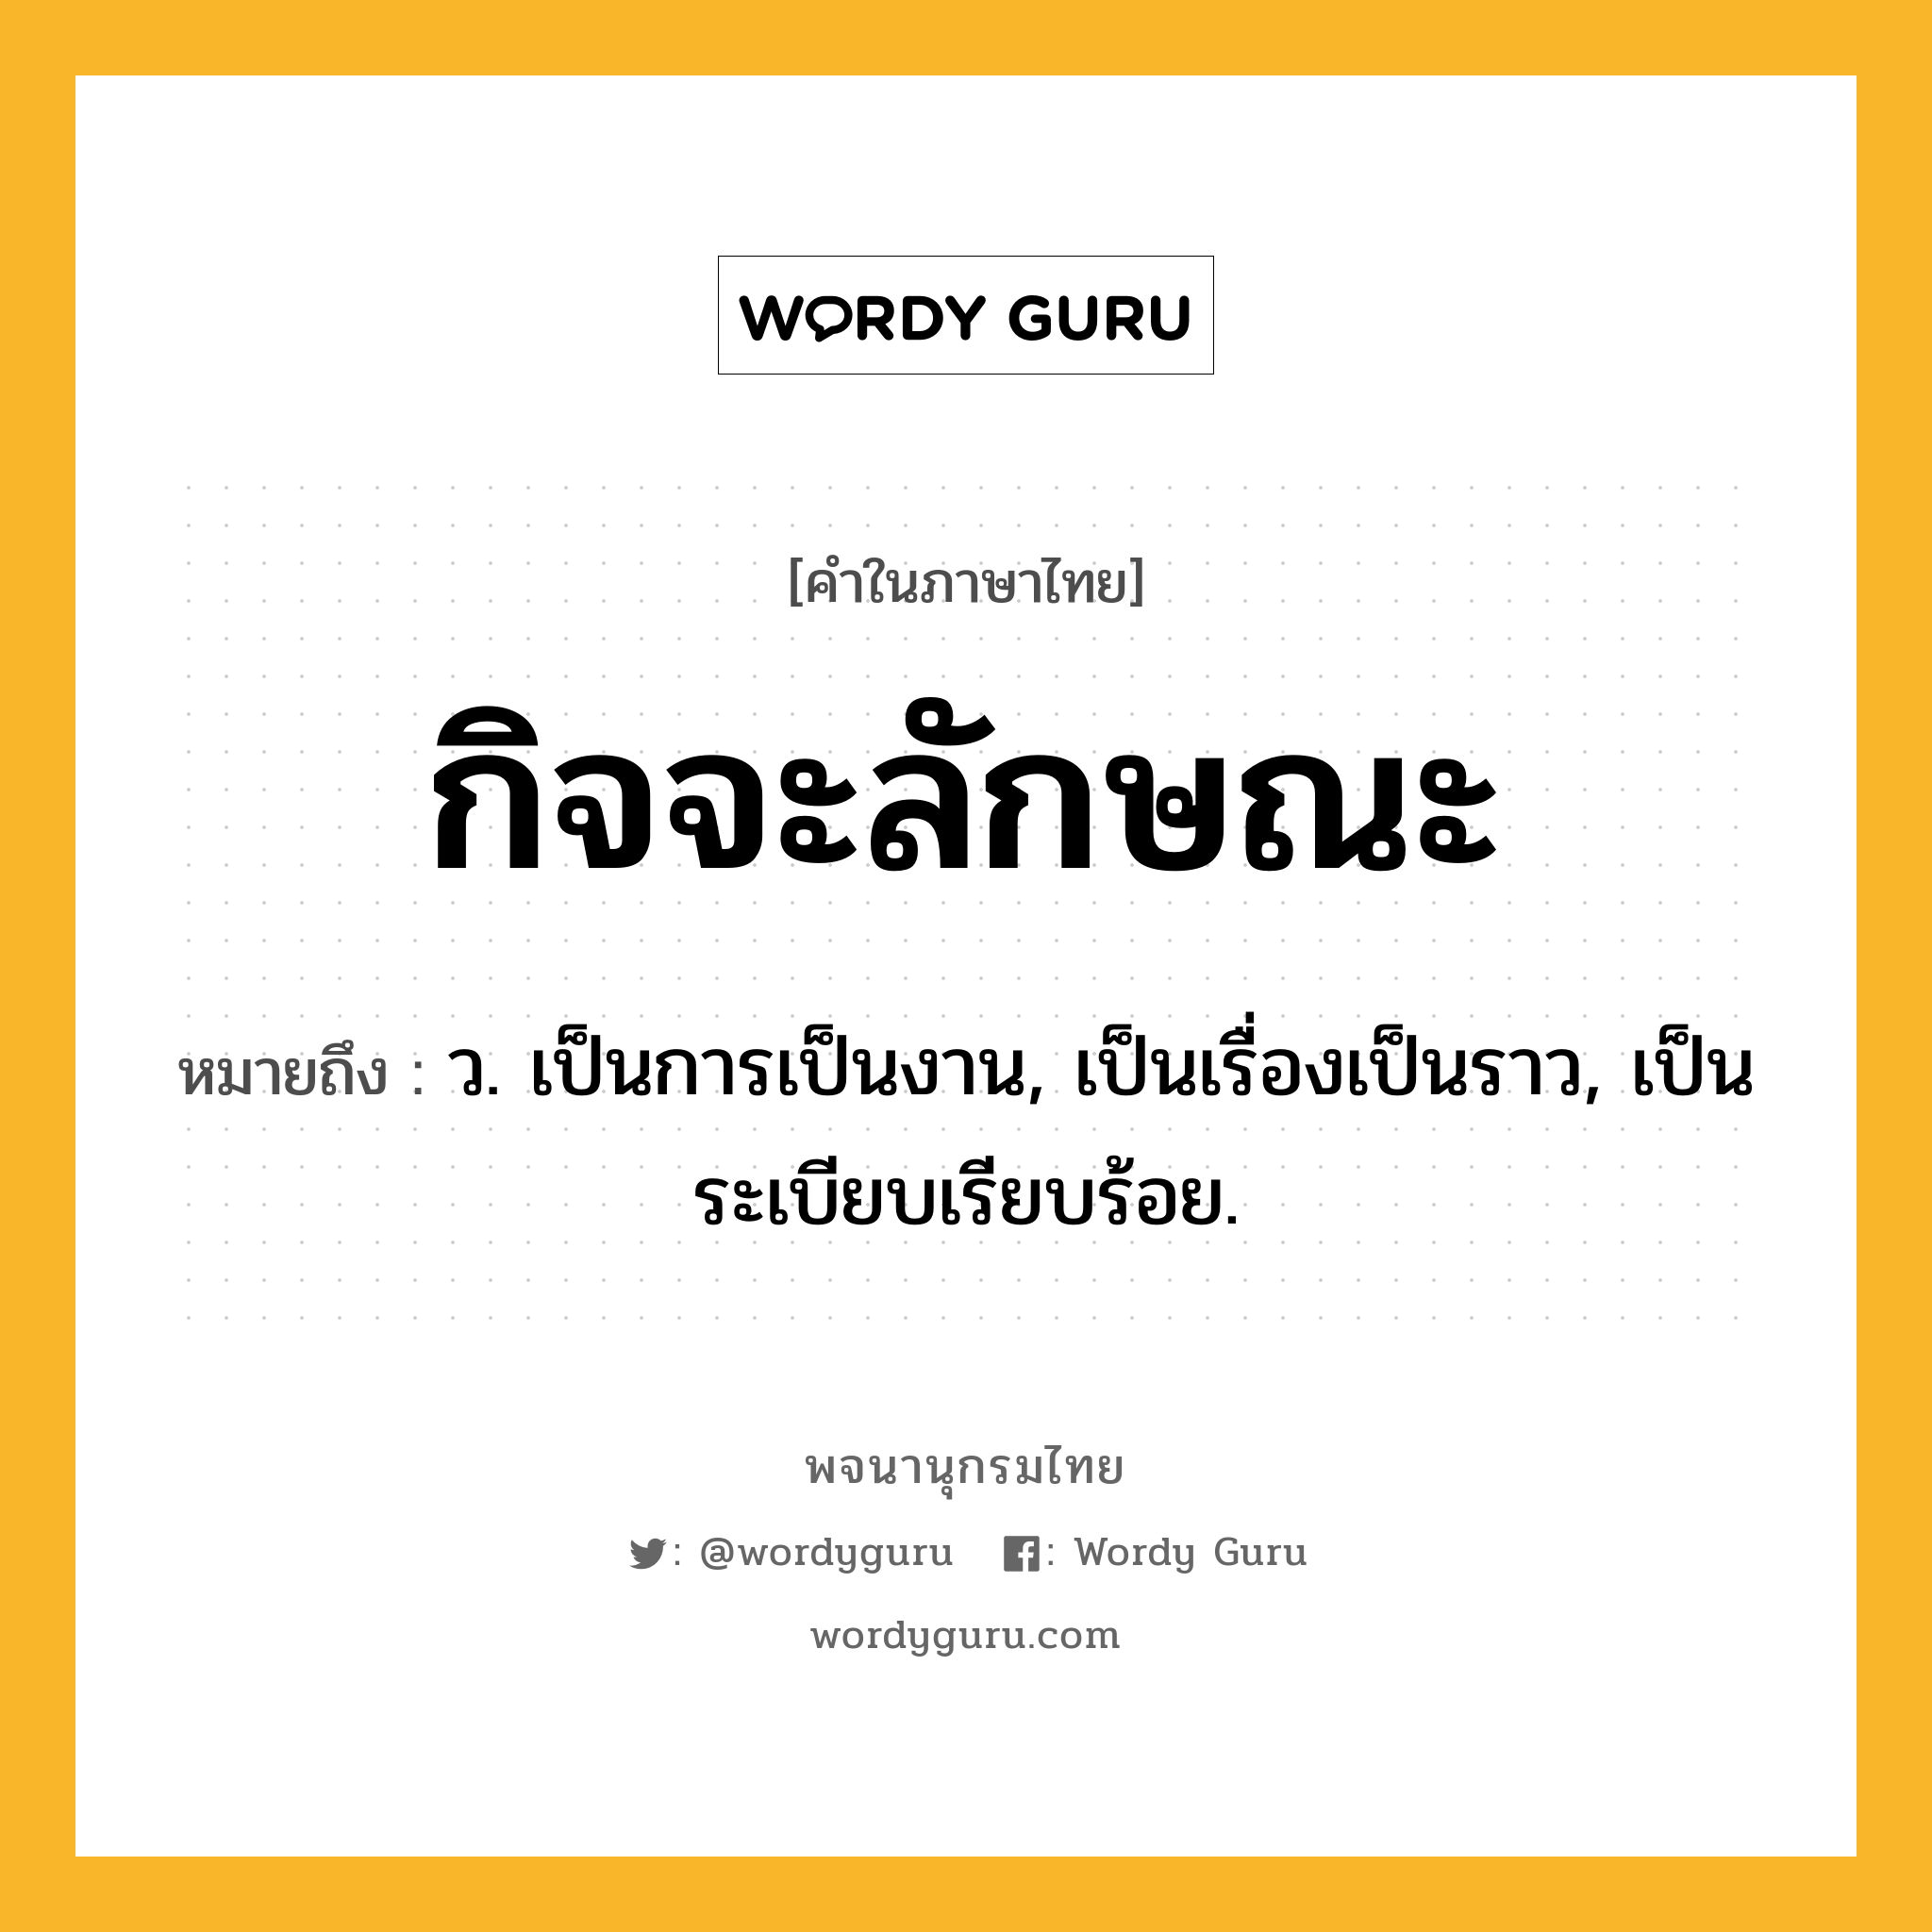 กิจจะลักษณะ หมายถึงอะไร?, คำในภาษาไทย กิจจะลักษณะ หมายถึง ว. เป็นการเป็นงาน, เป็นเรื่องเป็นราว, เป็นระเบียบเรียบร้อย.